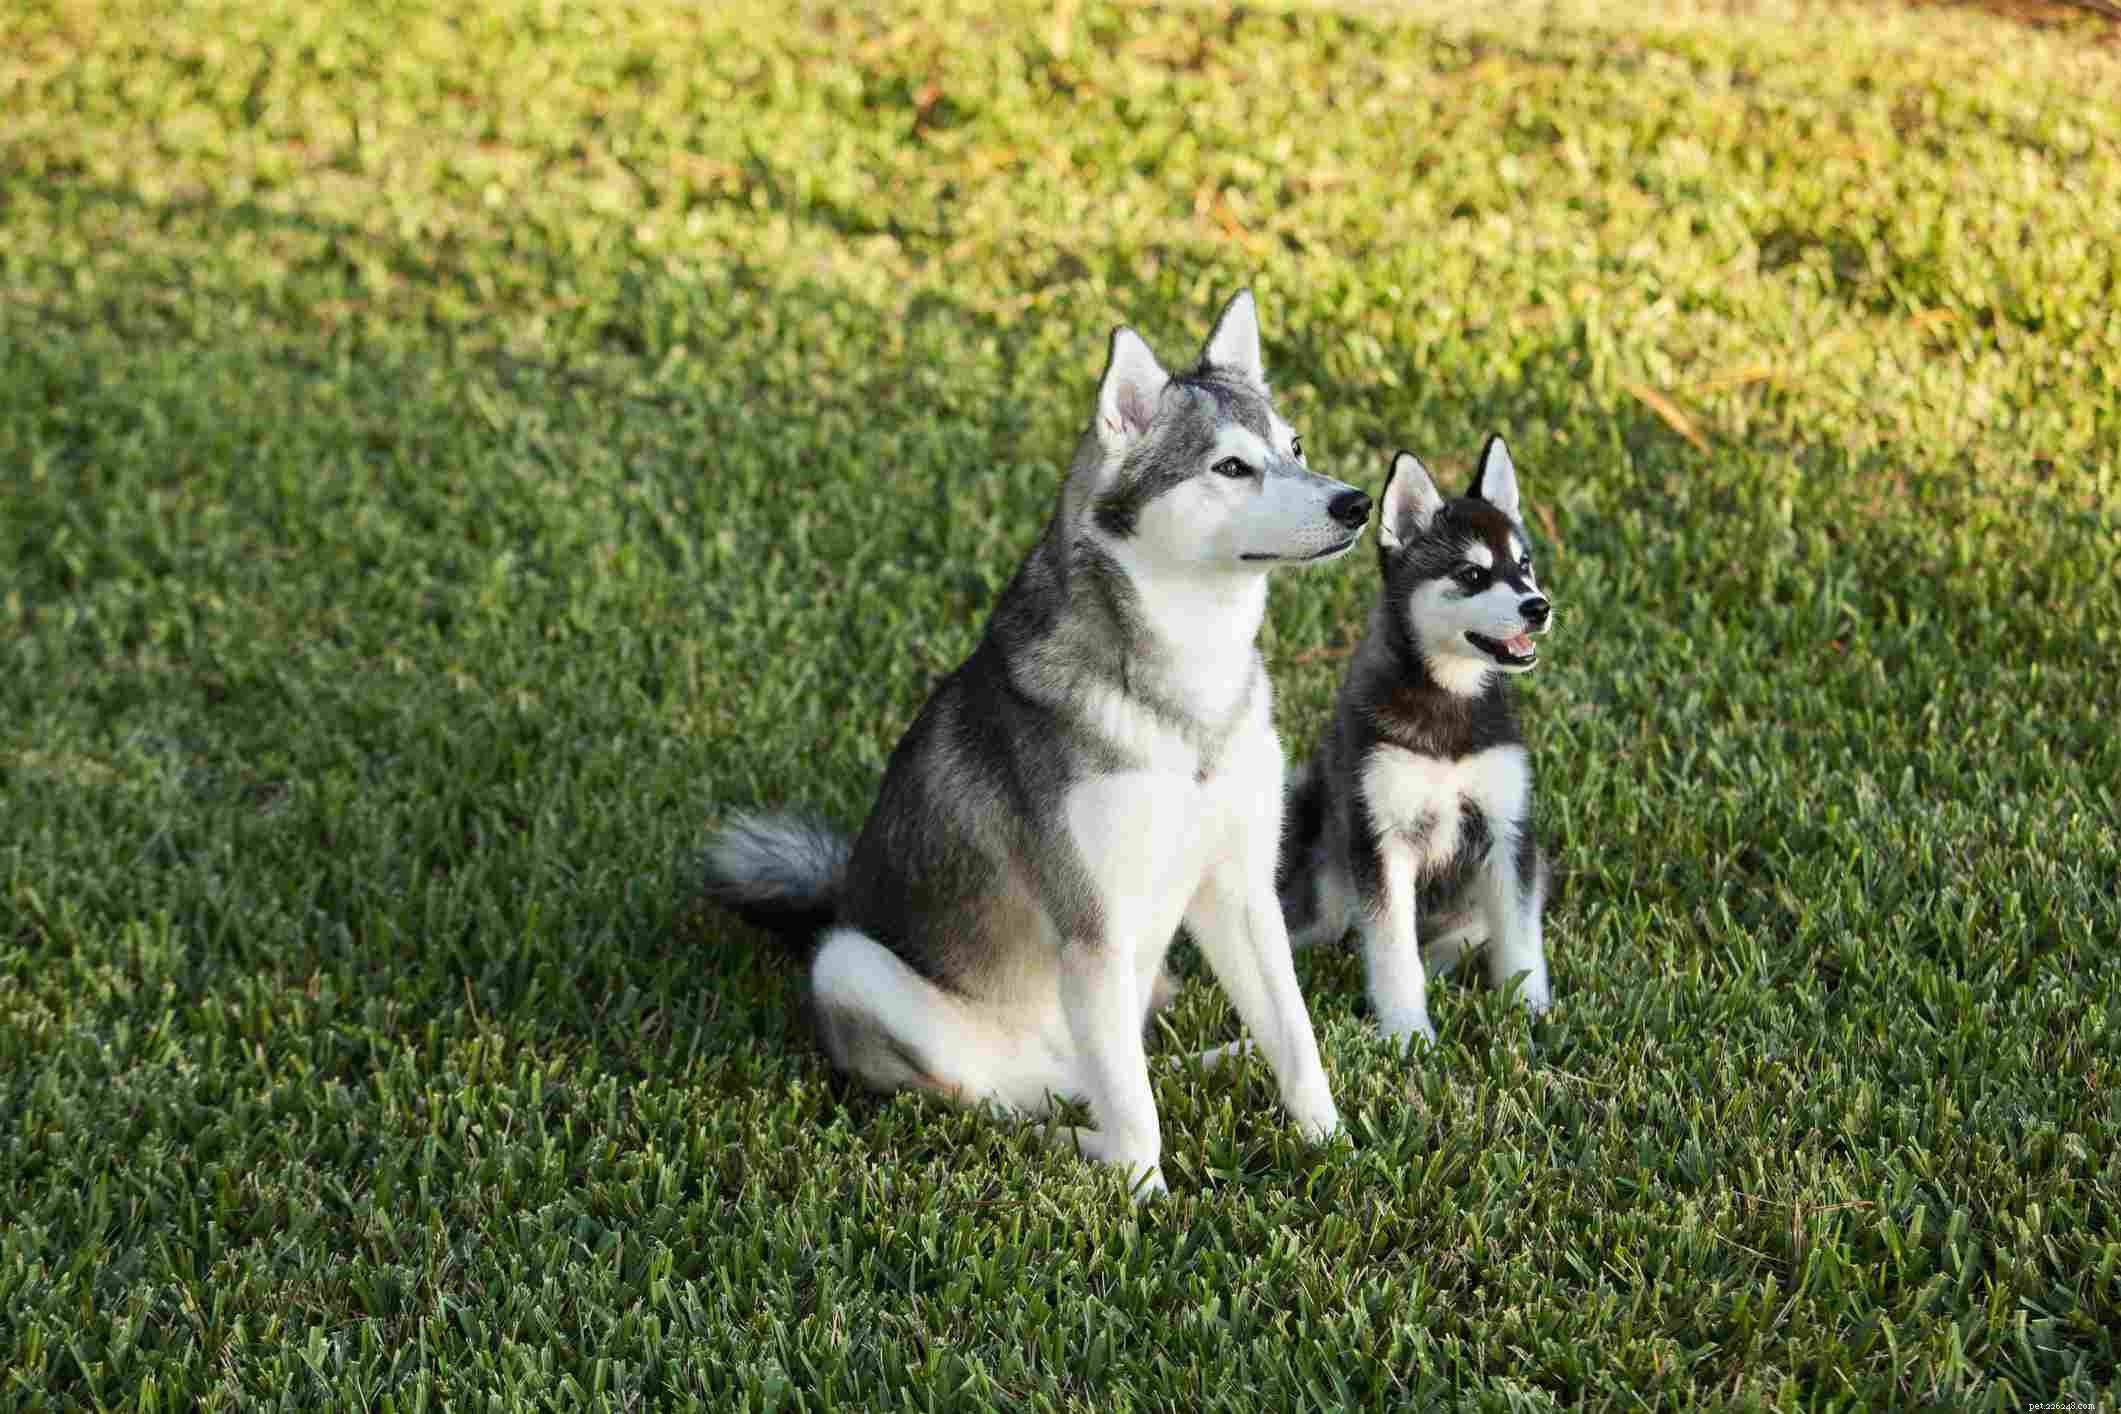 アラスカンクリーカイ：犬の品種の特徴とケア 